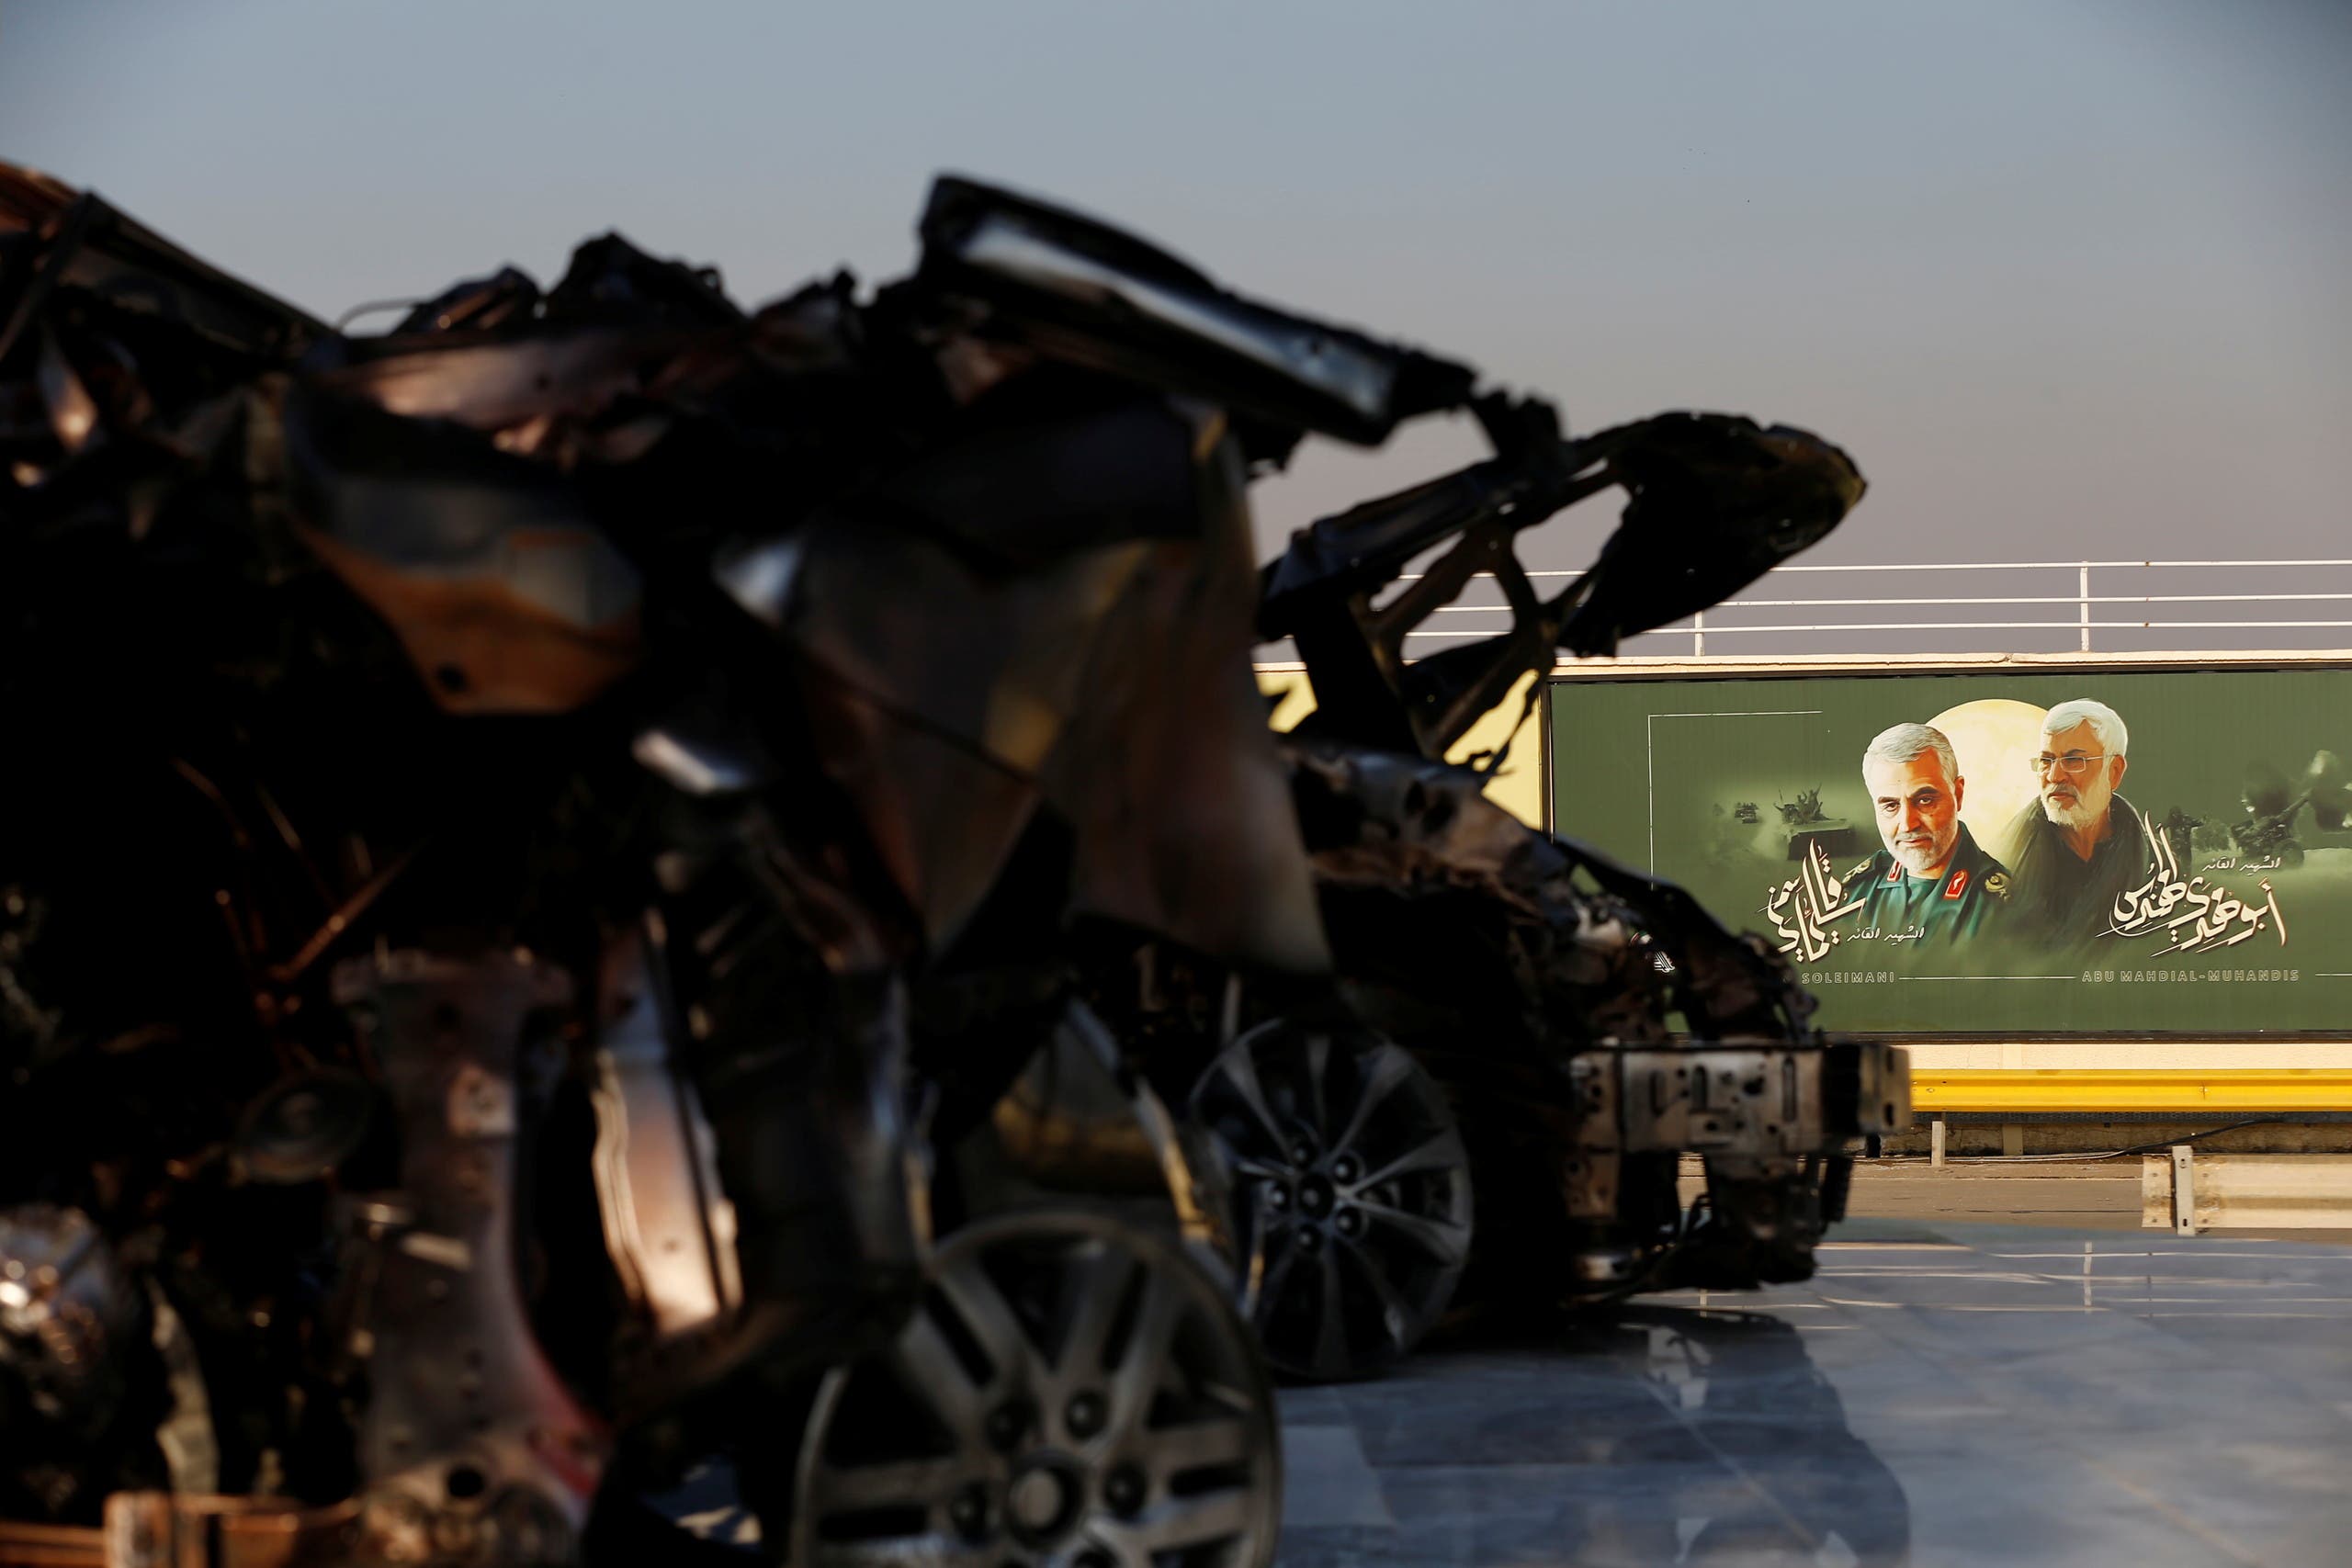 תמונות של קאסם סולימאני ואבו מהדי אל-מוחנדיס ליד נמל התעופה של בגדאד, ליד הריסות המכונית שבה נסעו